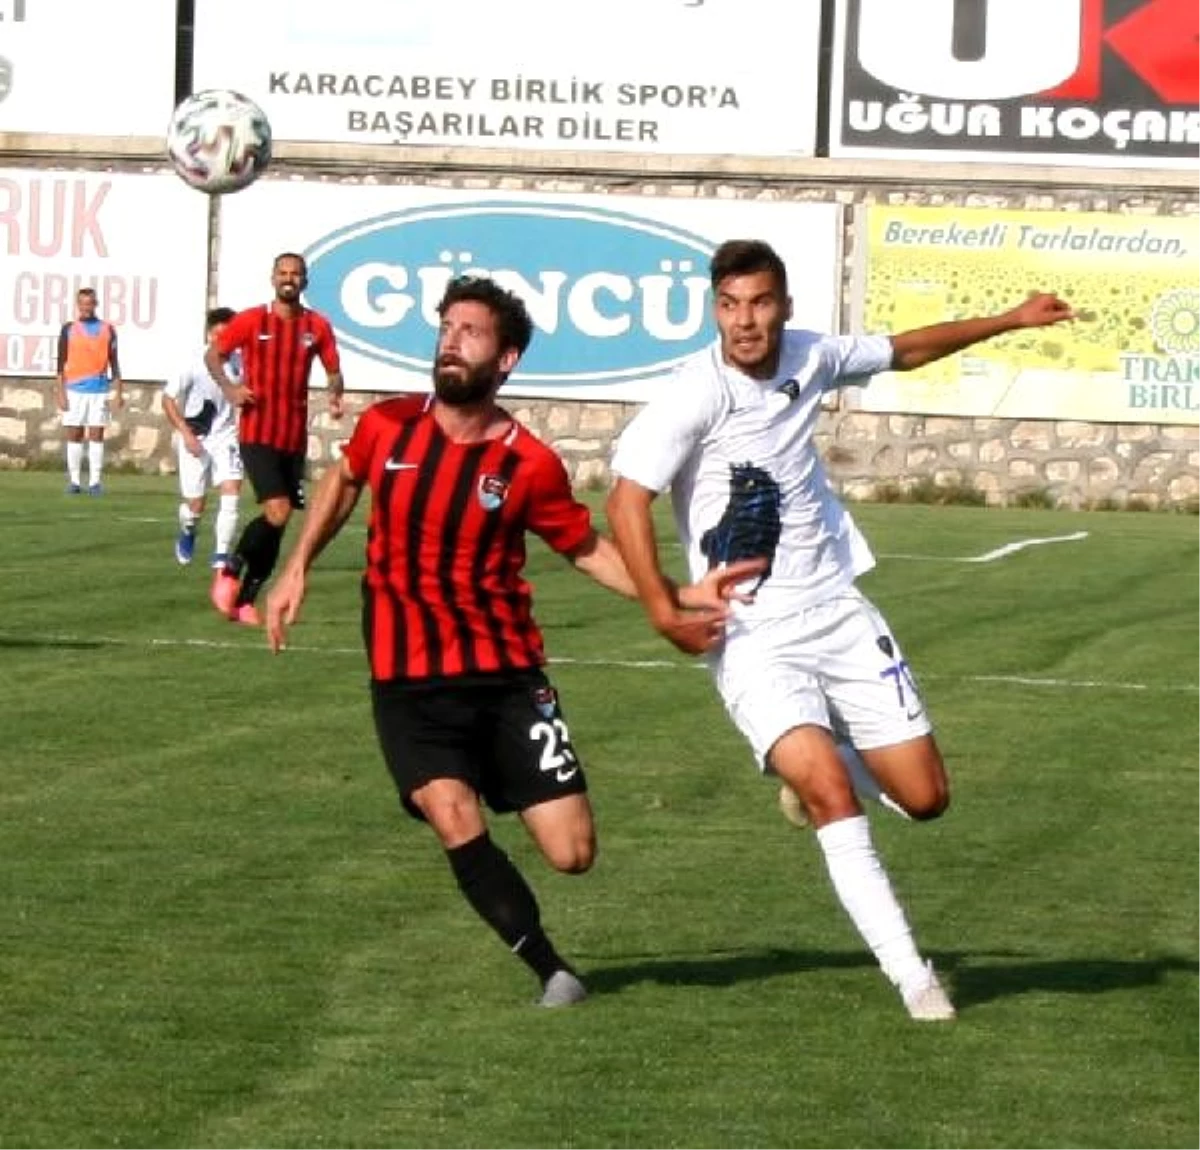 Karacabey Belediyespor – Vanspor Futbol Kulübü: 0-1